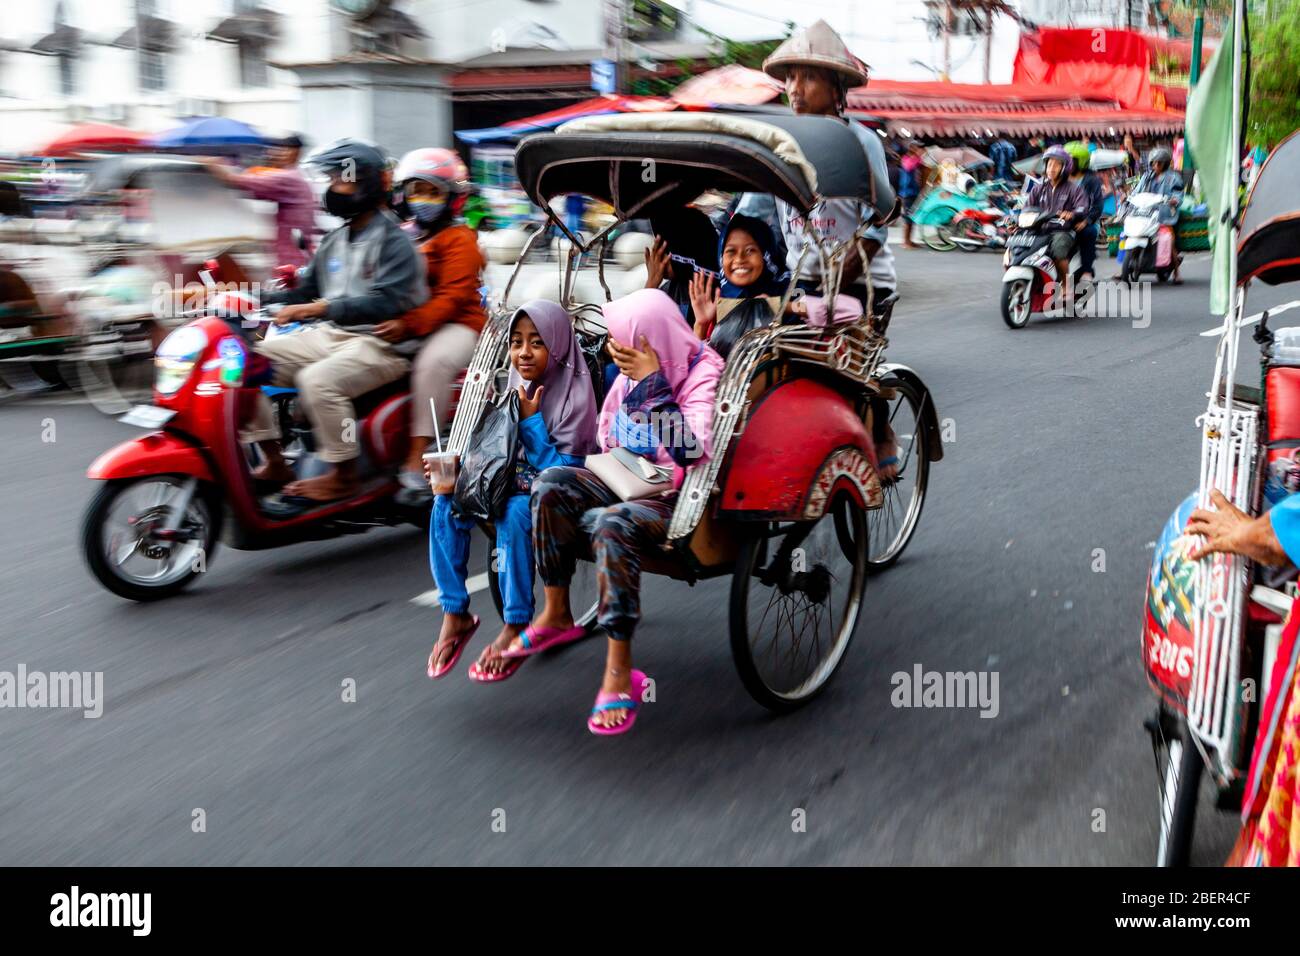 Un groupe d'enfants indonésiens voyageant dans UN becak traditionnel (cycle Rickshaw), rue Malioboro, Yogyakarta, Indonésie. Banque D'Images